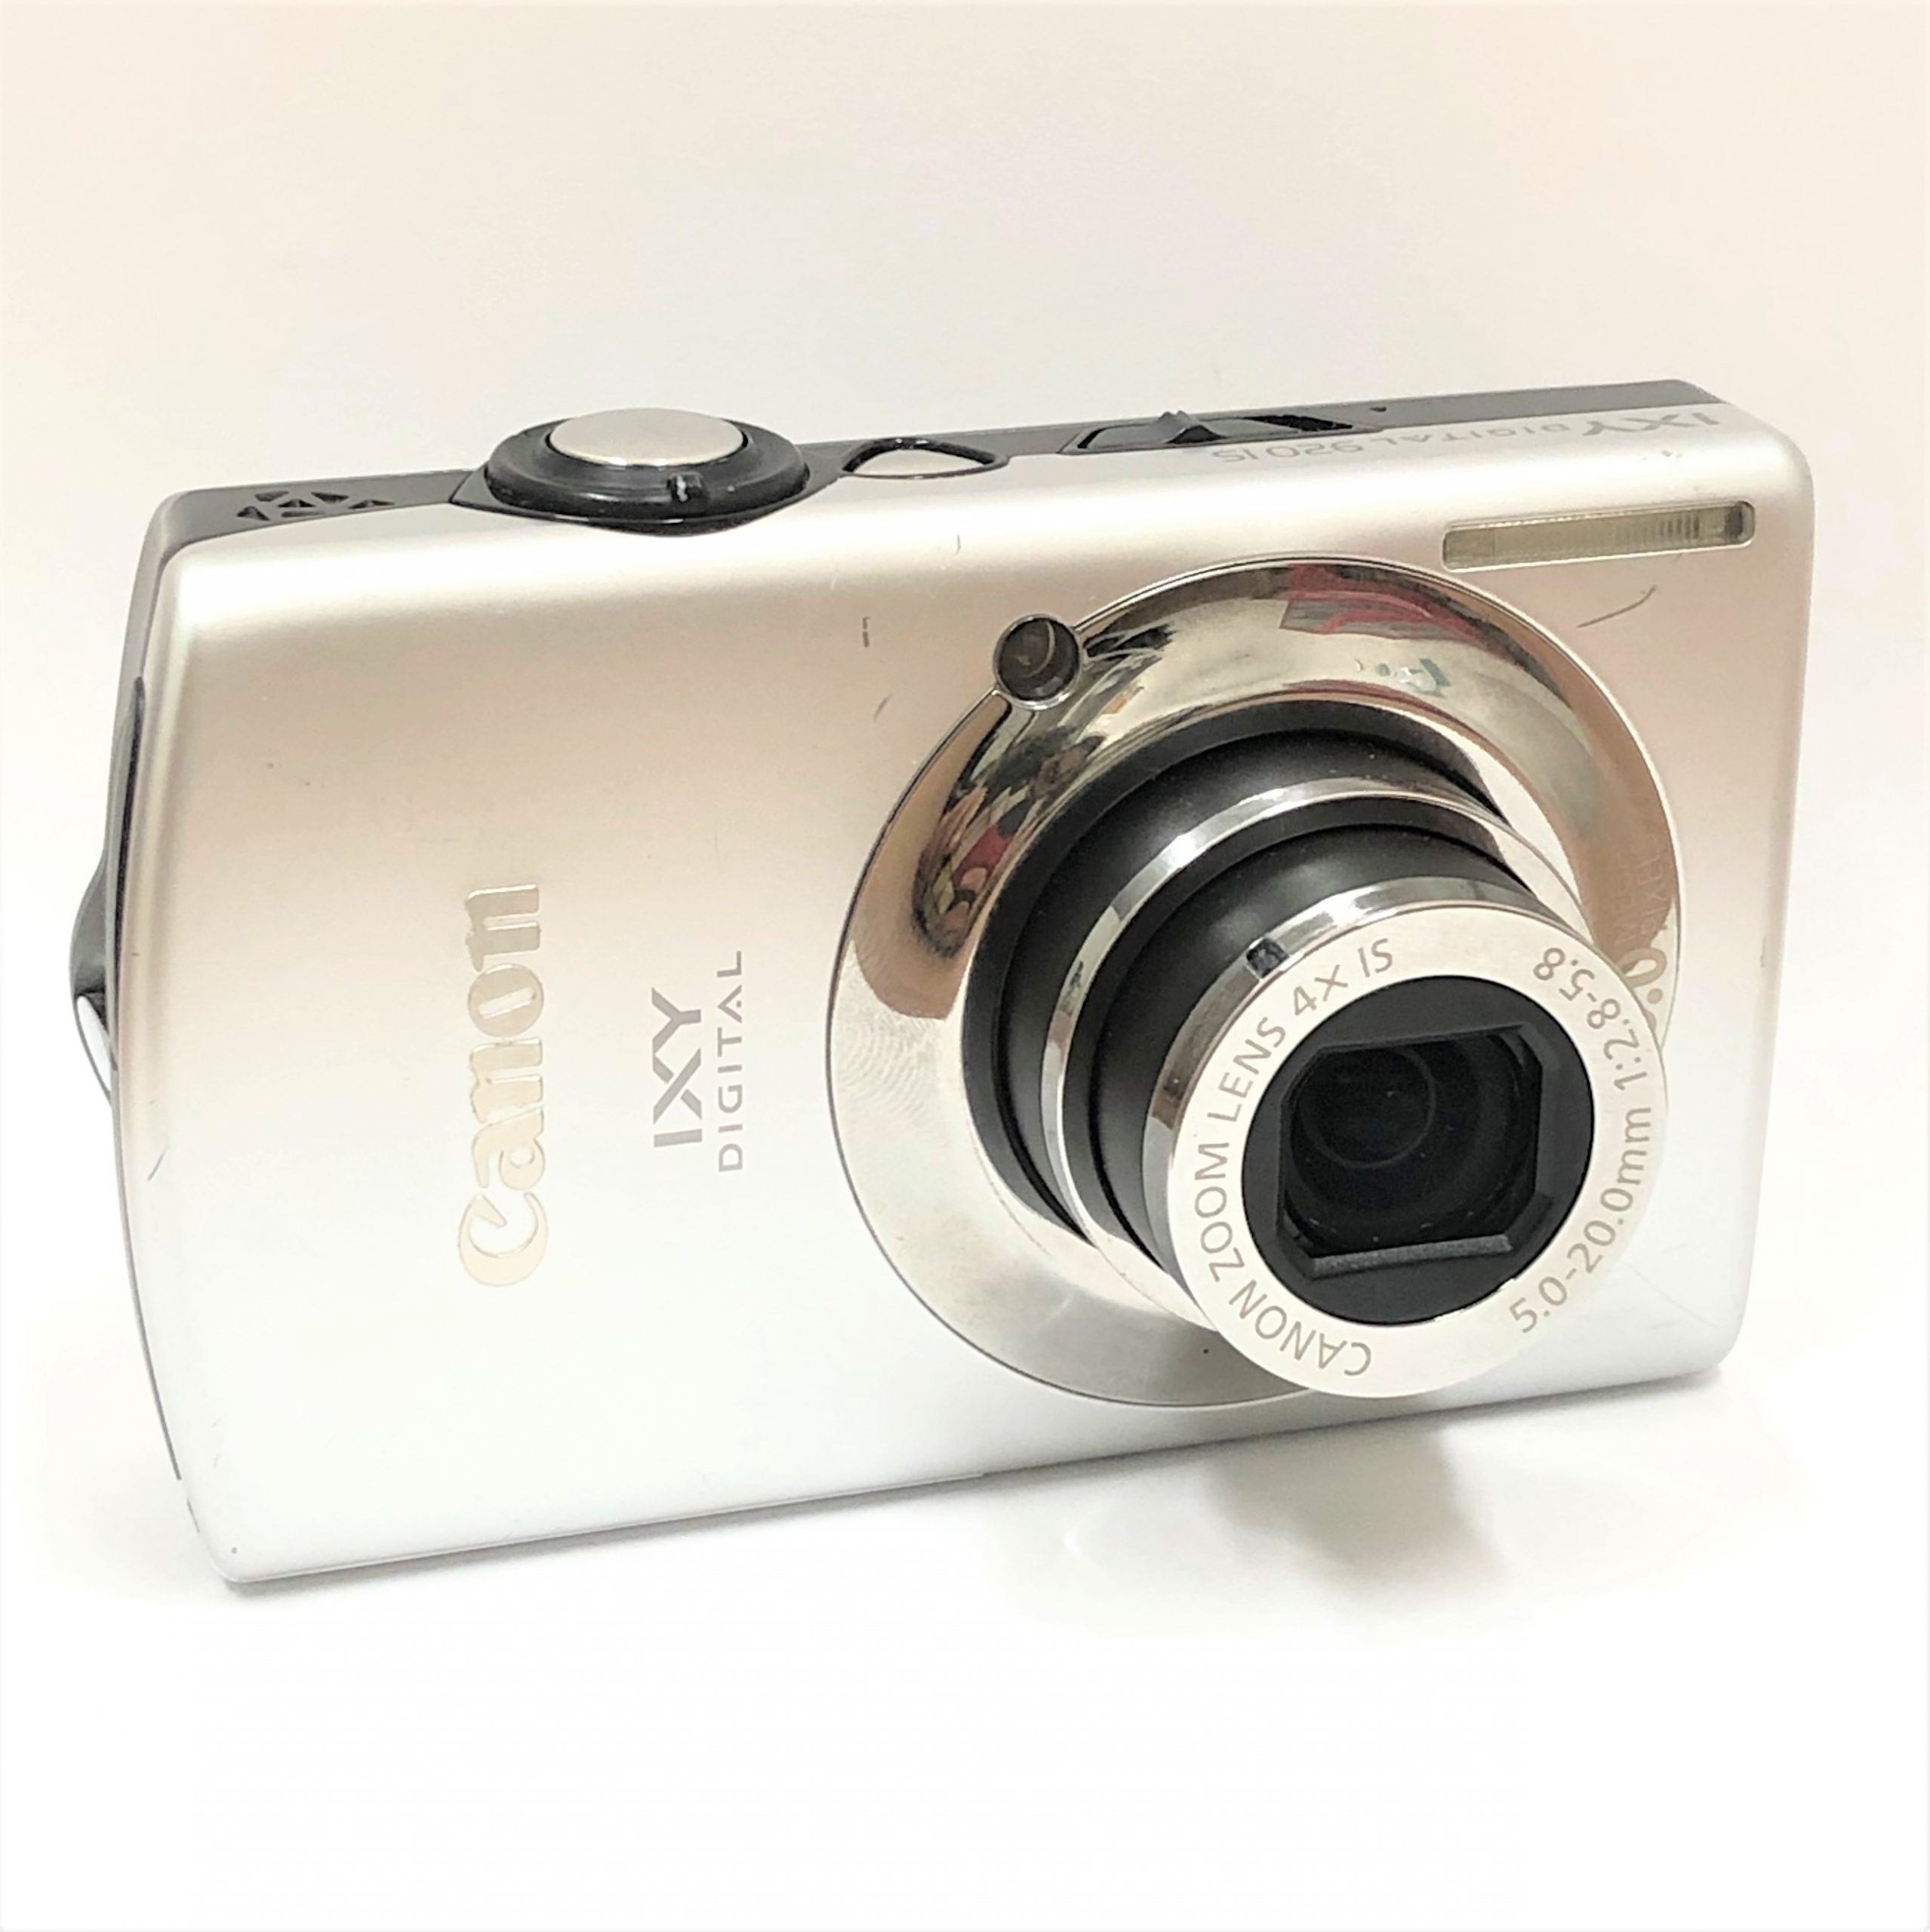 【Canon/キャノン】IXY DIGITAL 920 IS デジタルコンパクトカメラ